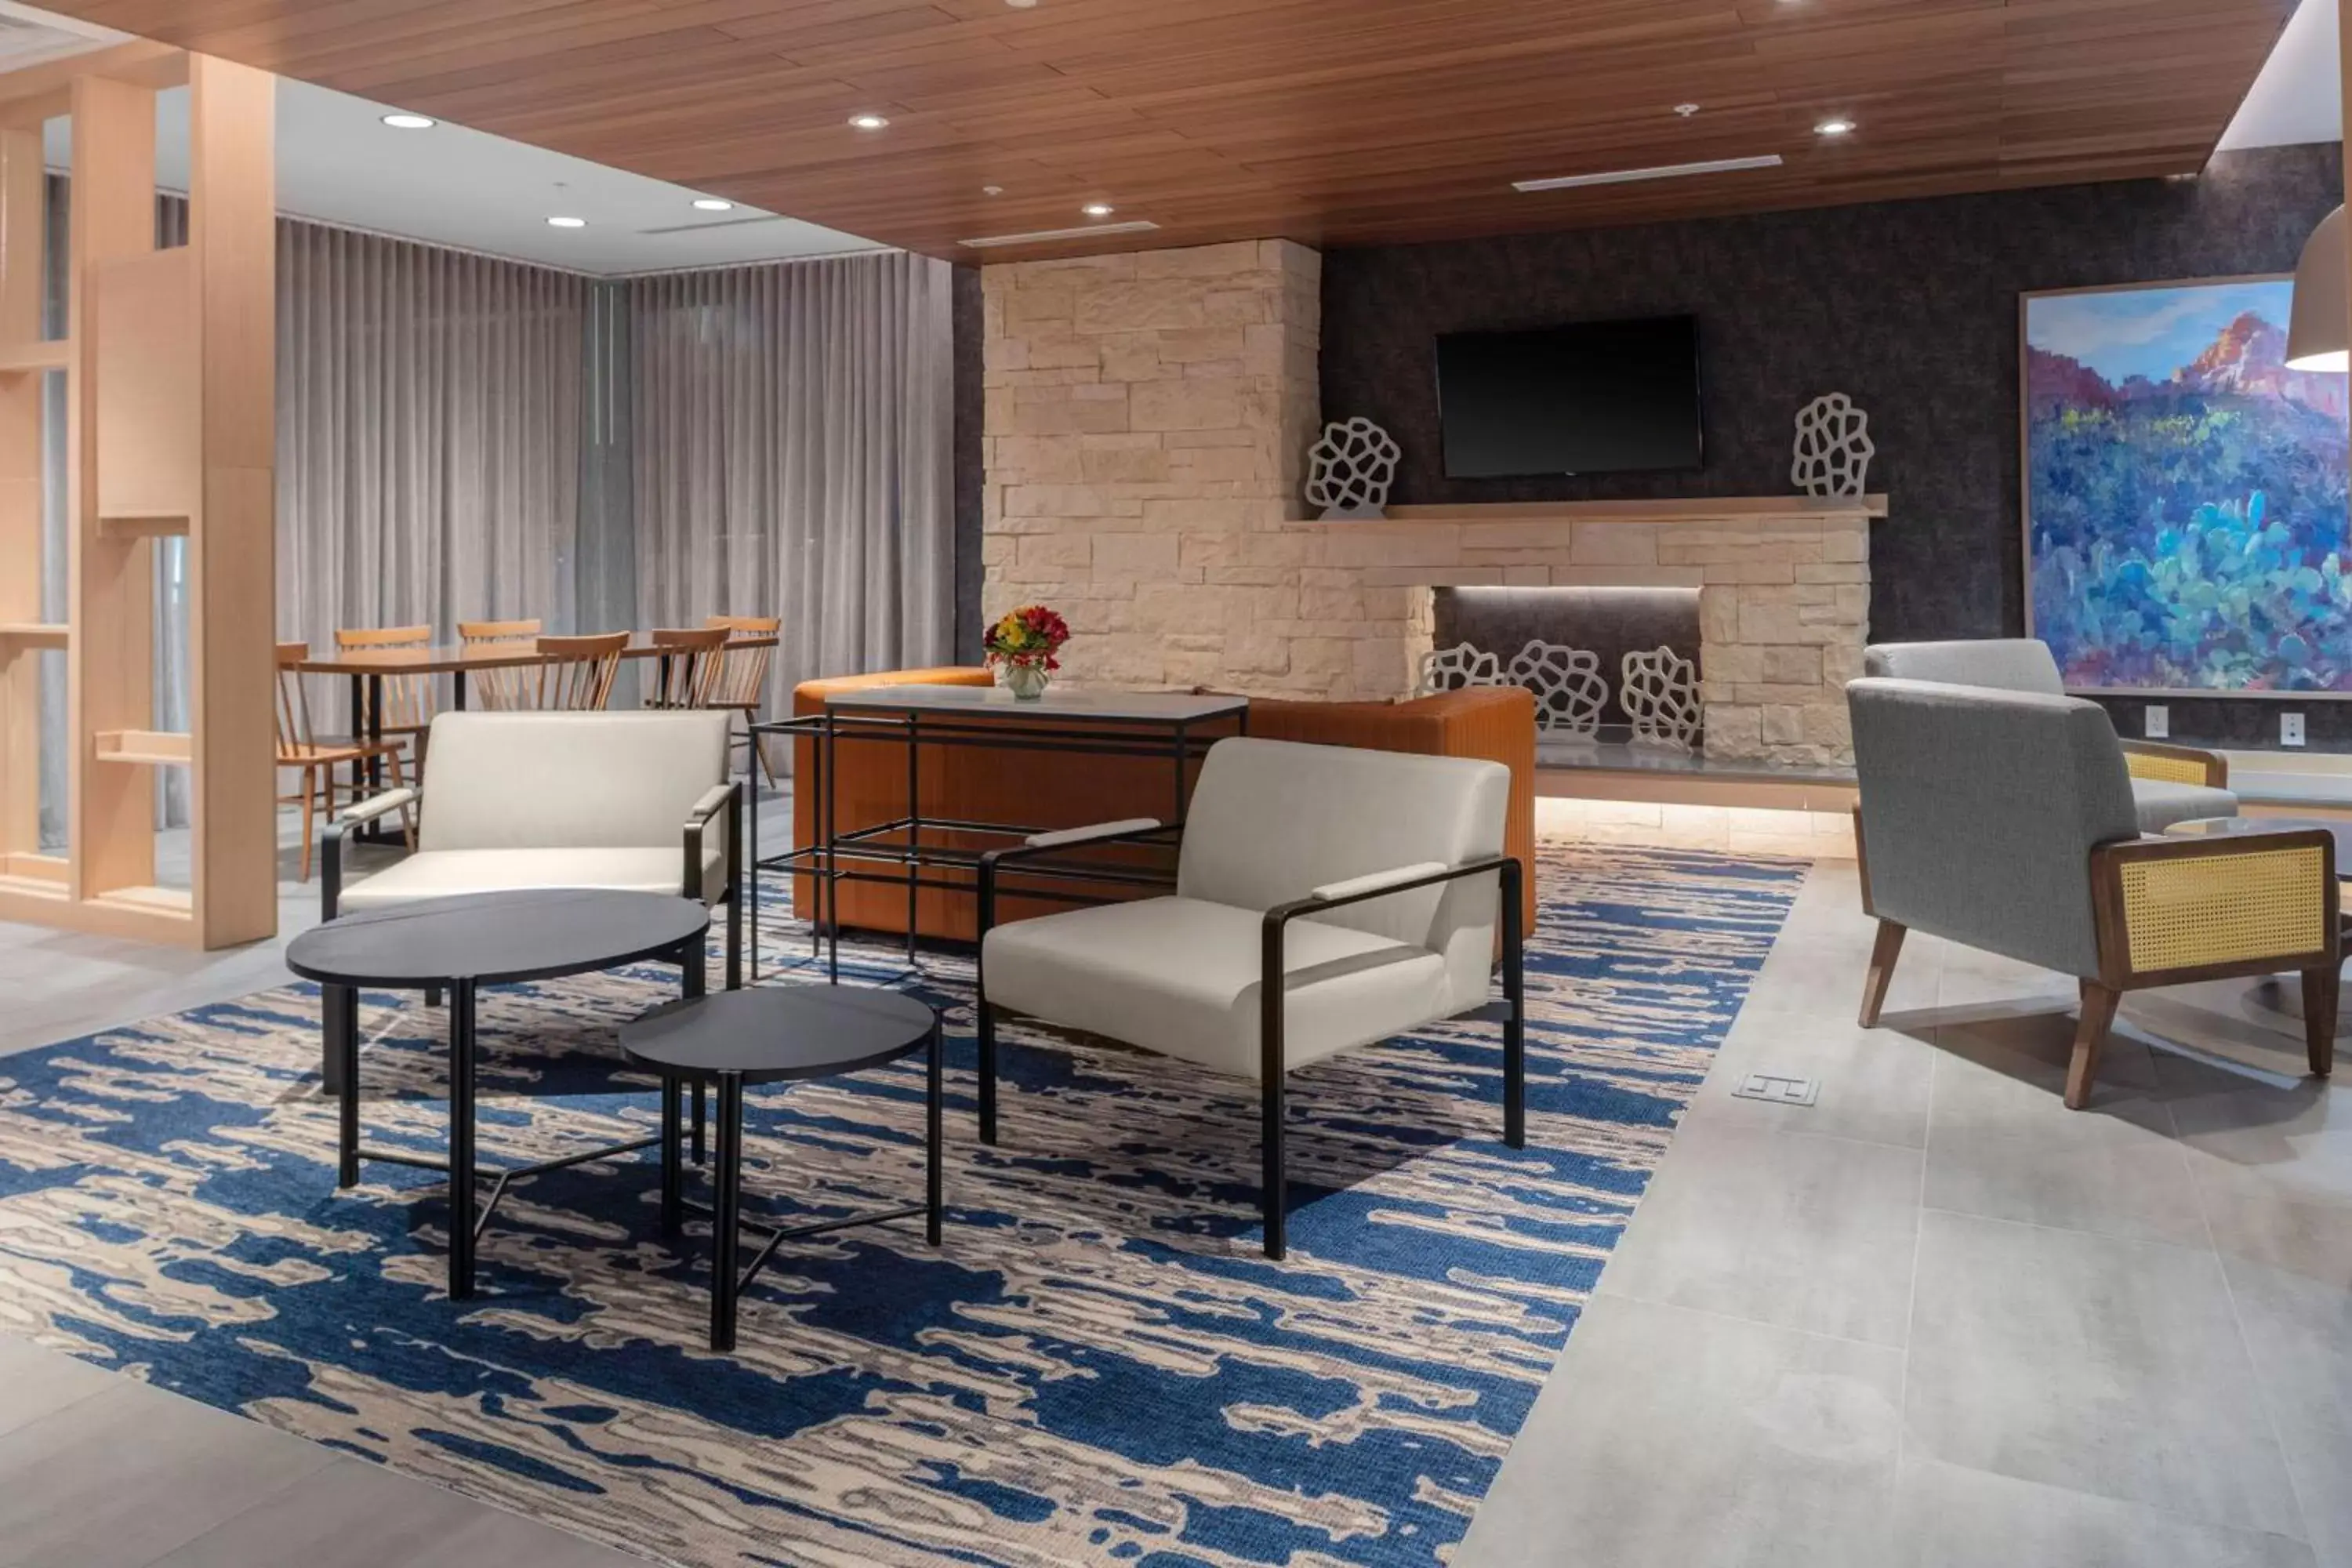 Lobby or reception in Fairfield Inn & Suites by Marriott Winnemucca